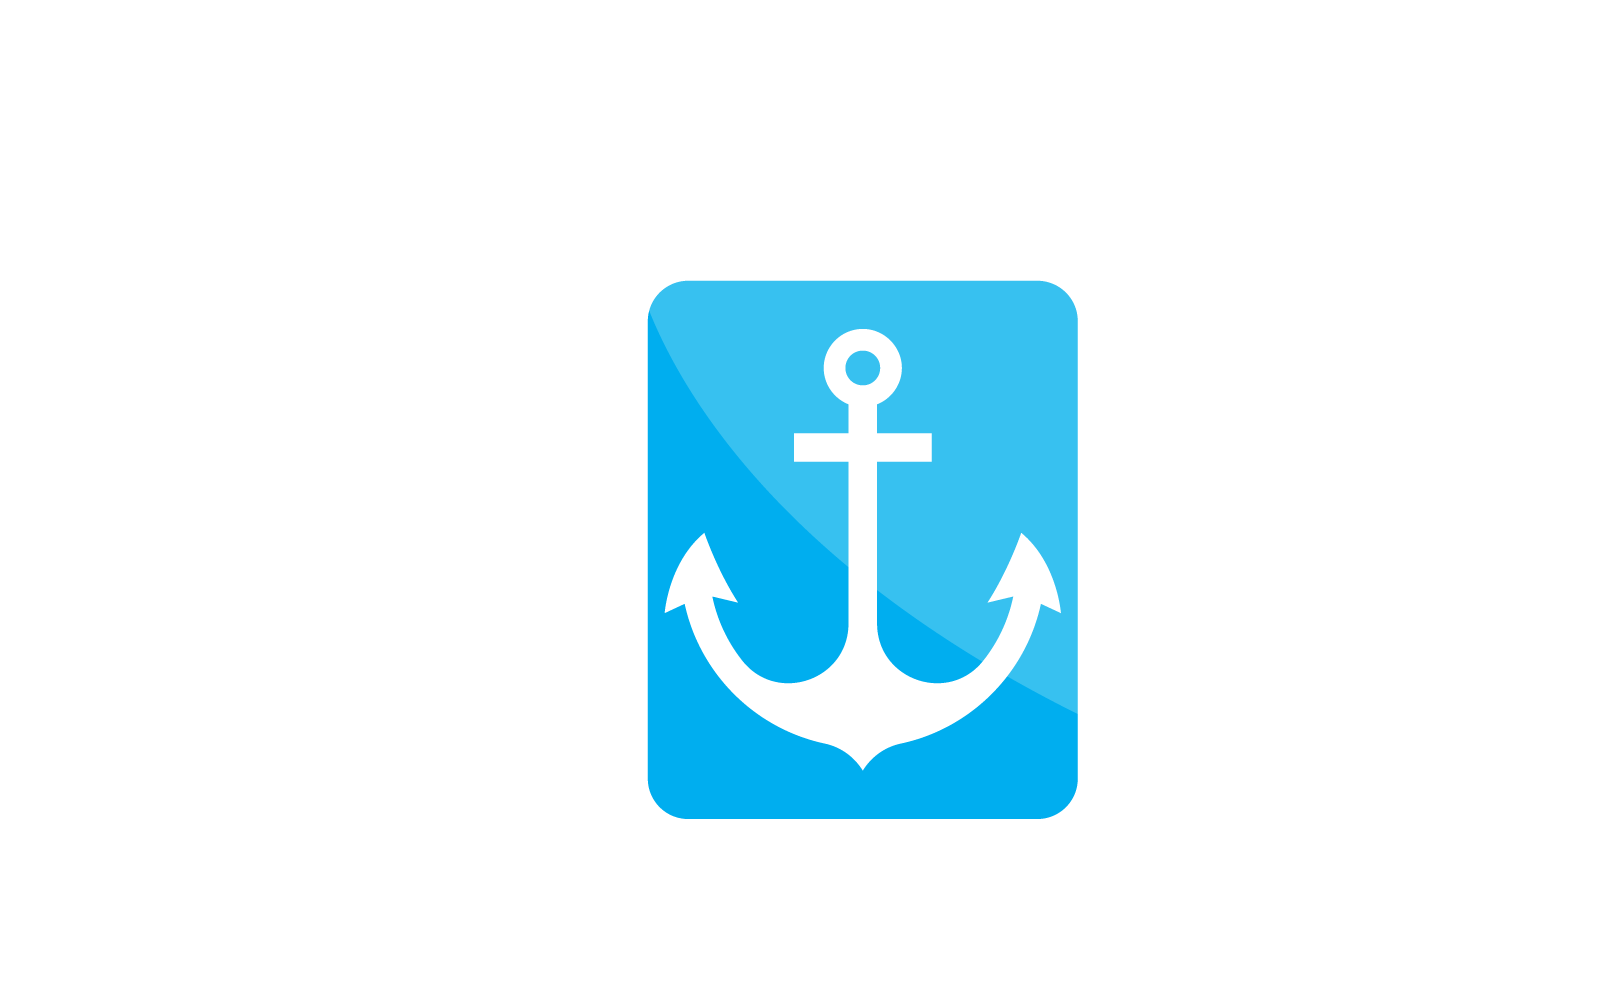 Anchor logo vector design illustration template